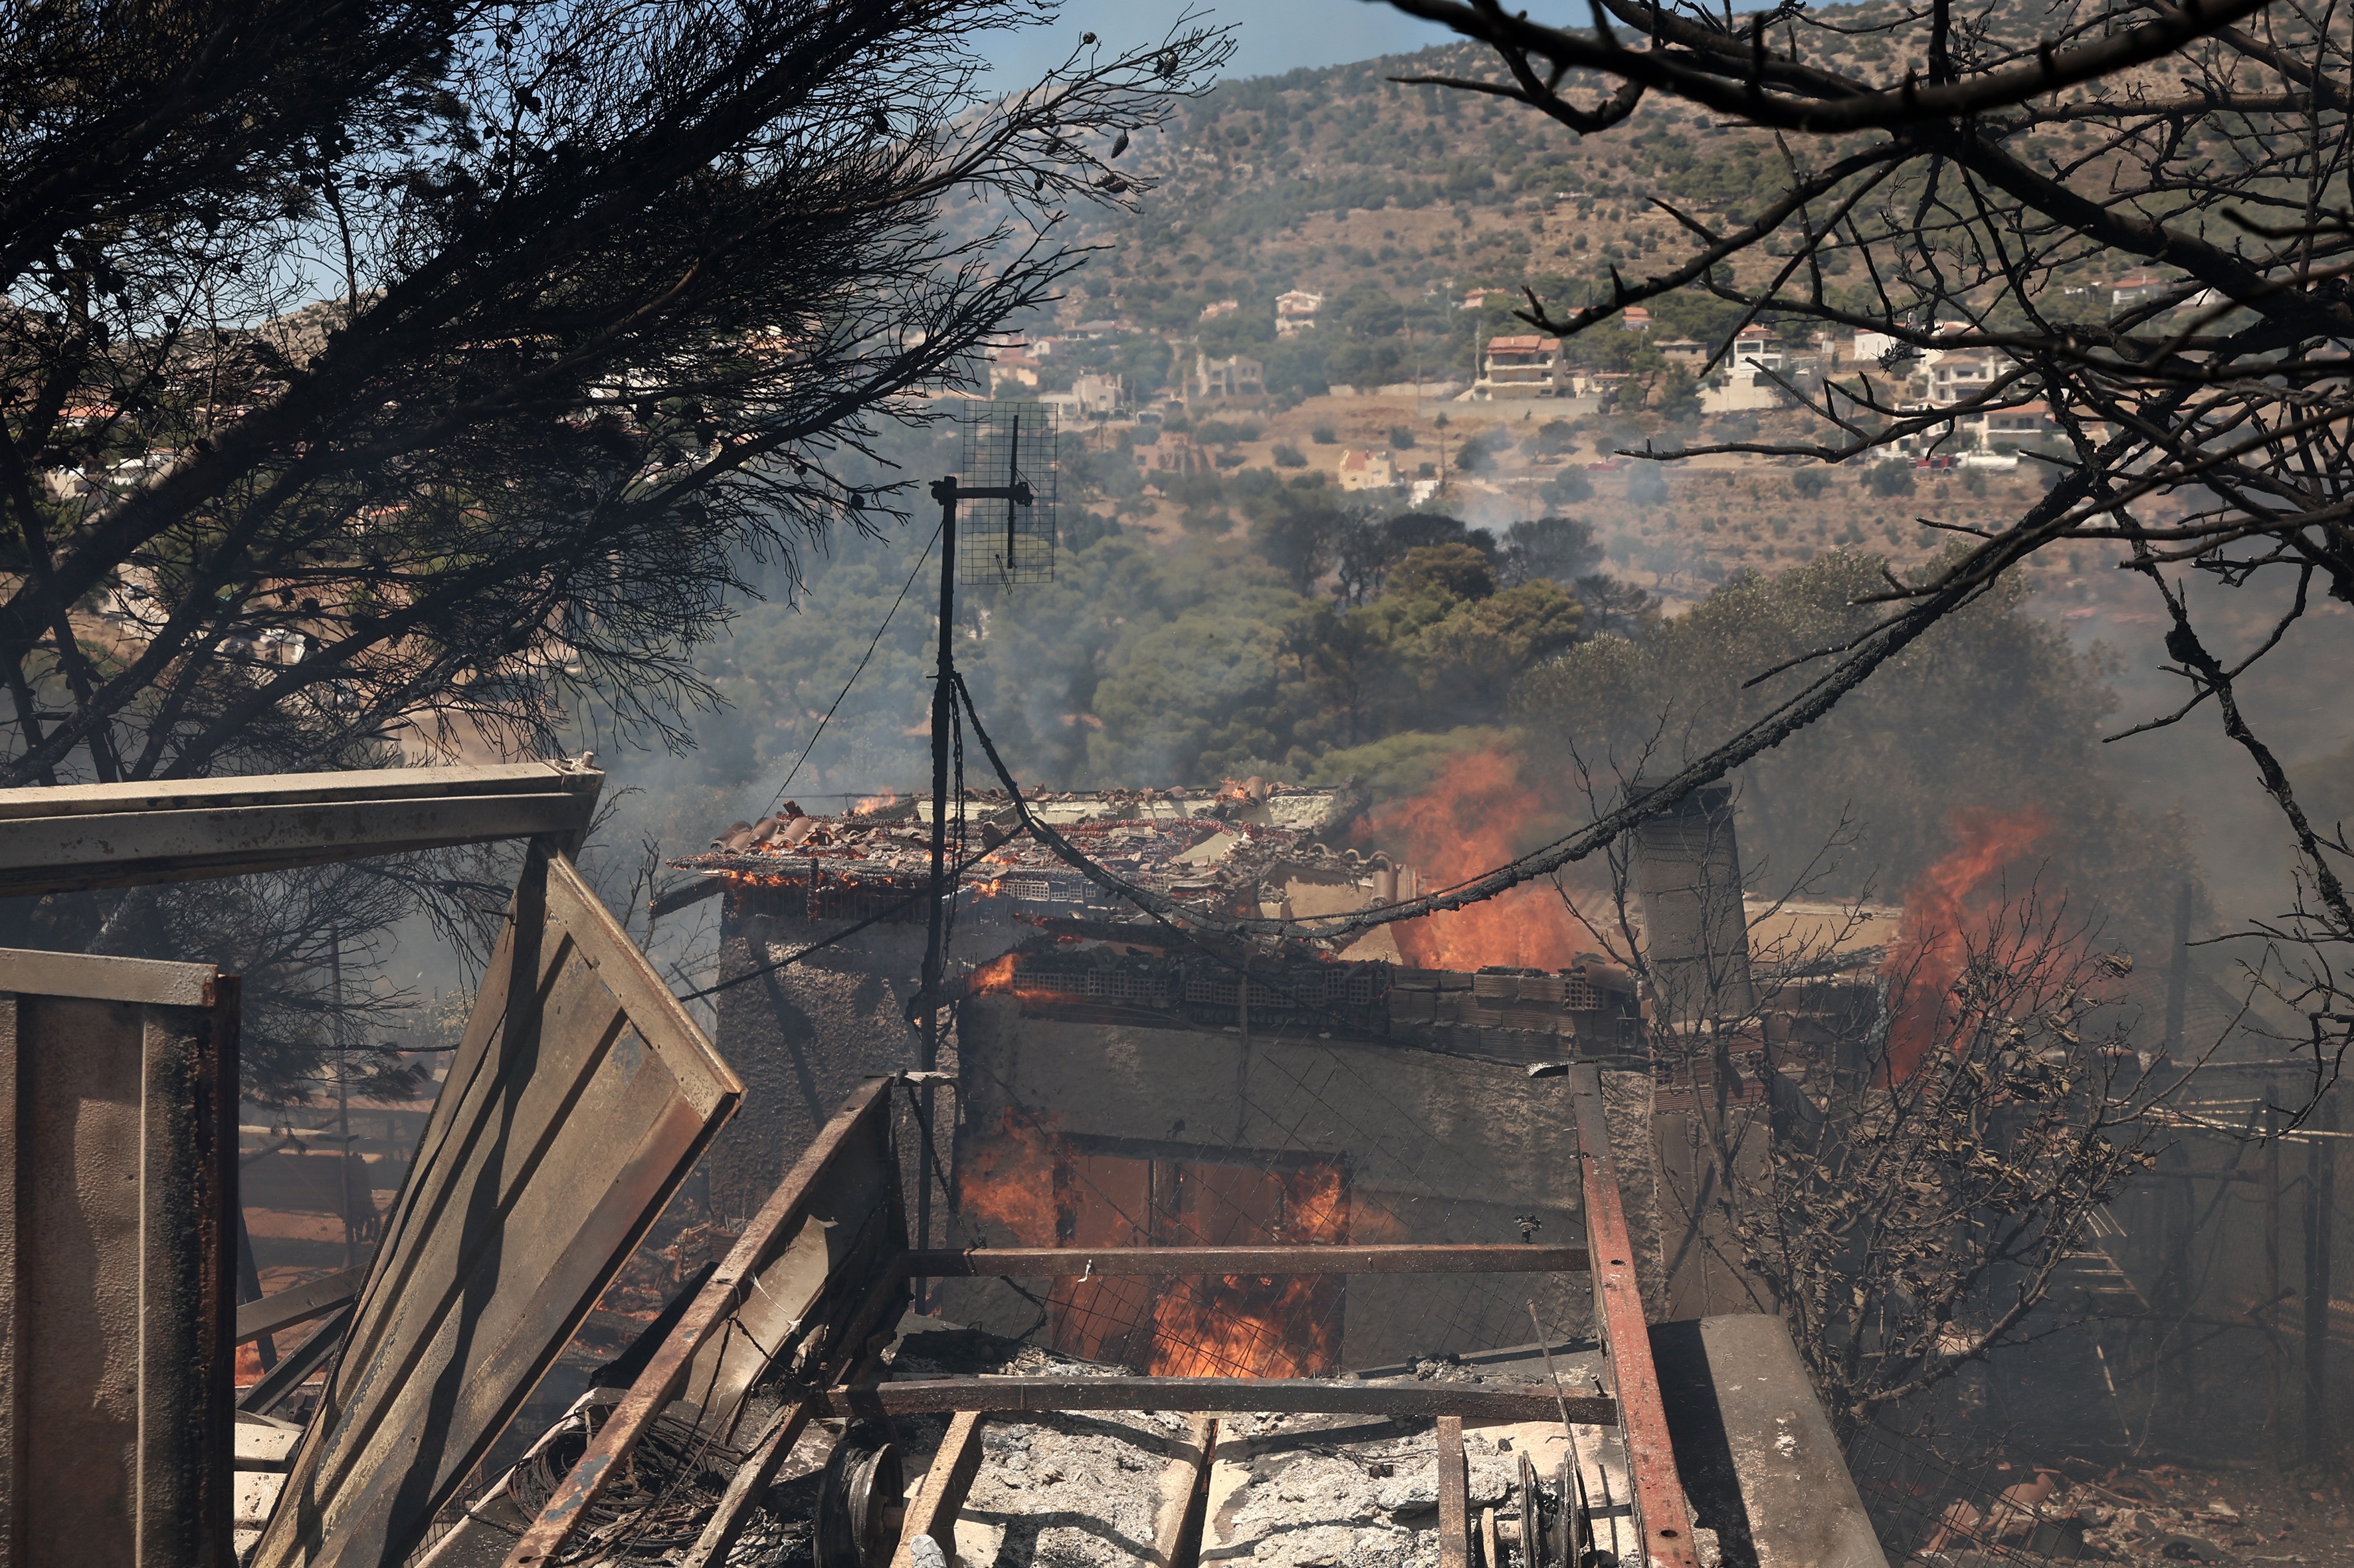 Καίγονται σπίτια στην Κερατέα &#8211; Τρίτο μήνυμα από το 112 για εκκένωση οικισμών, ενισχύονται οι πυροσβεστικές δυνάμεις